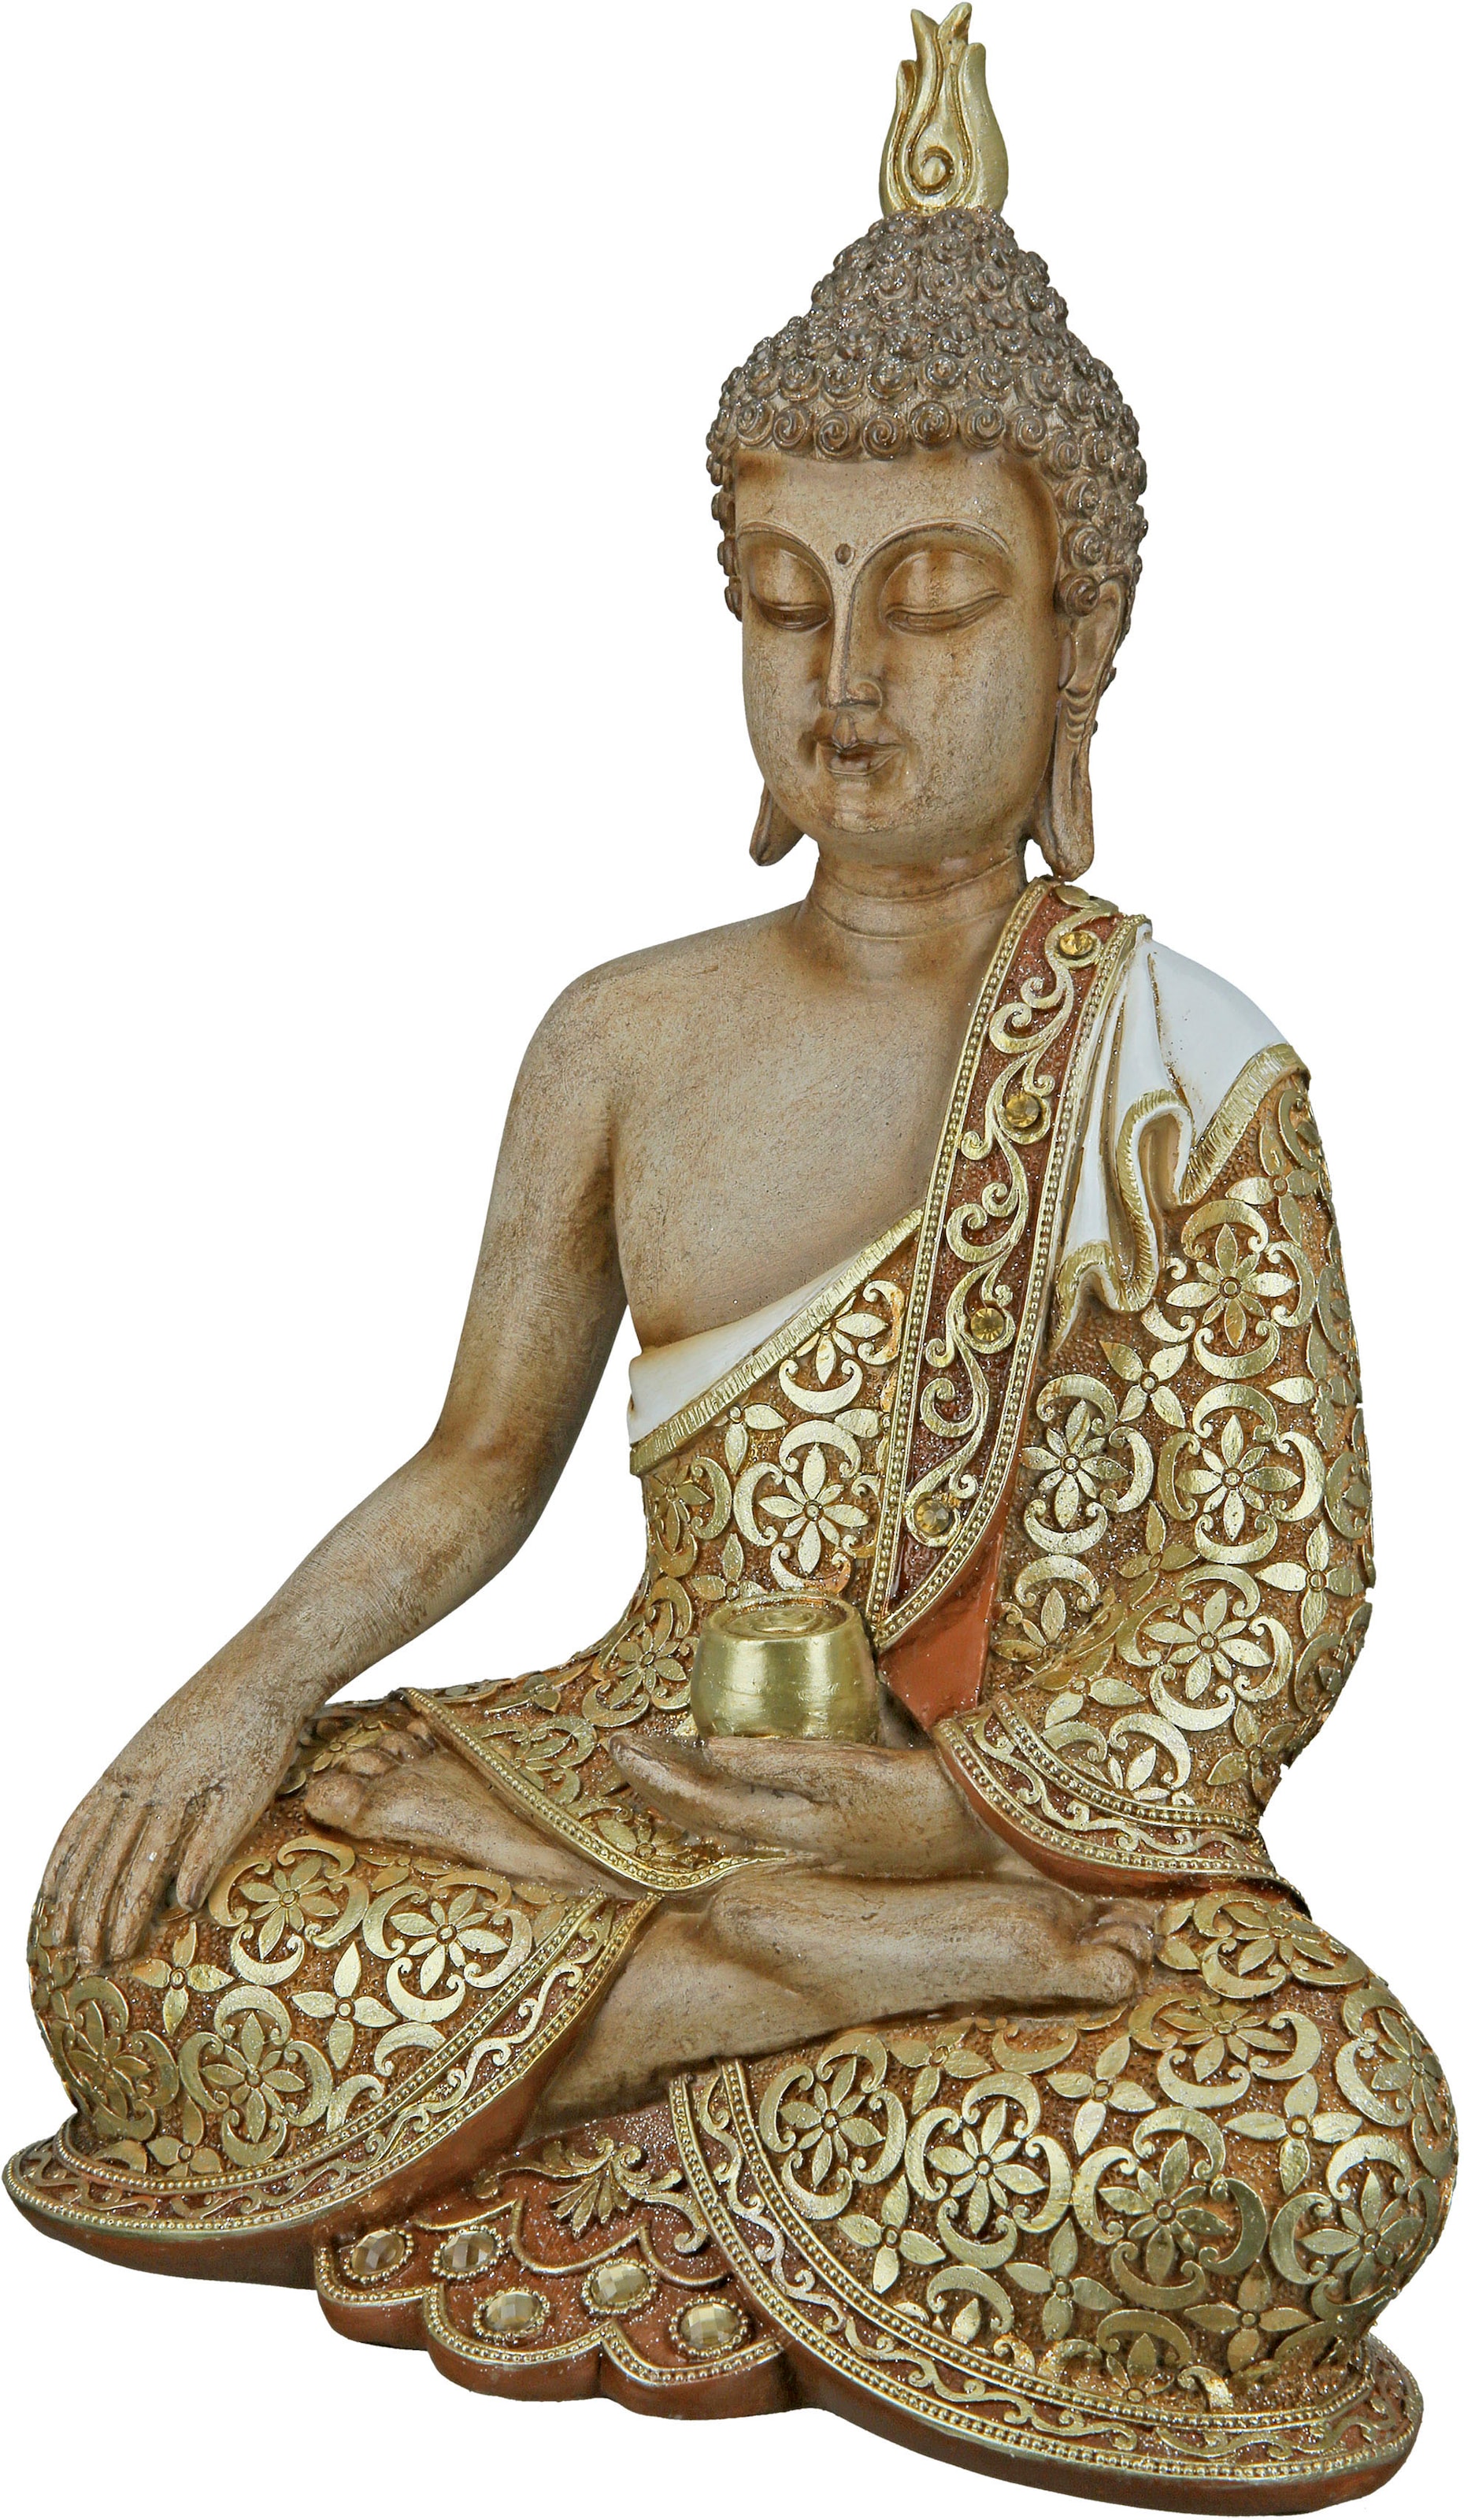 Buddhafigur | Buddhafiguren kaufen auf online